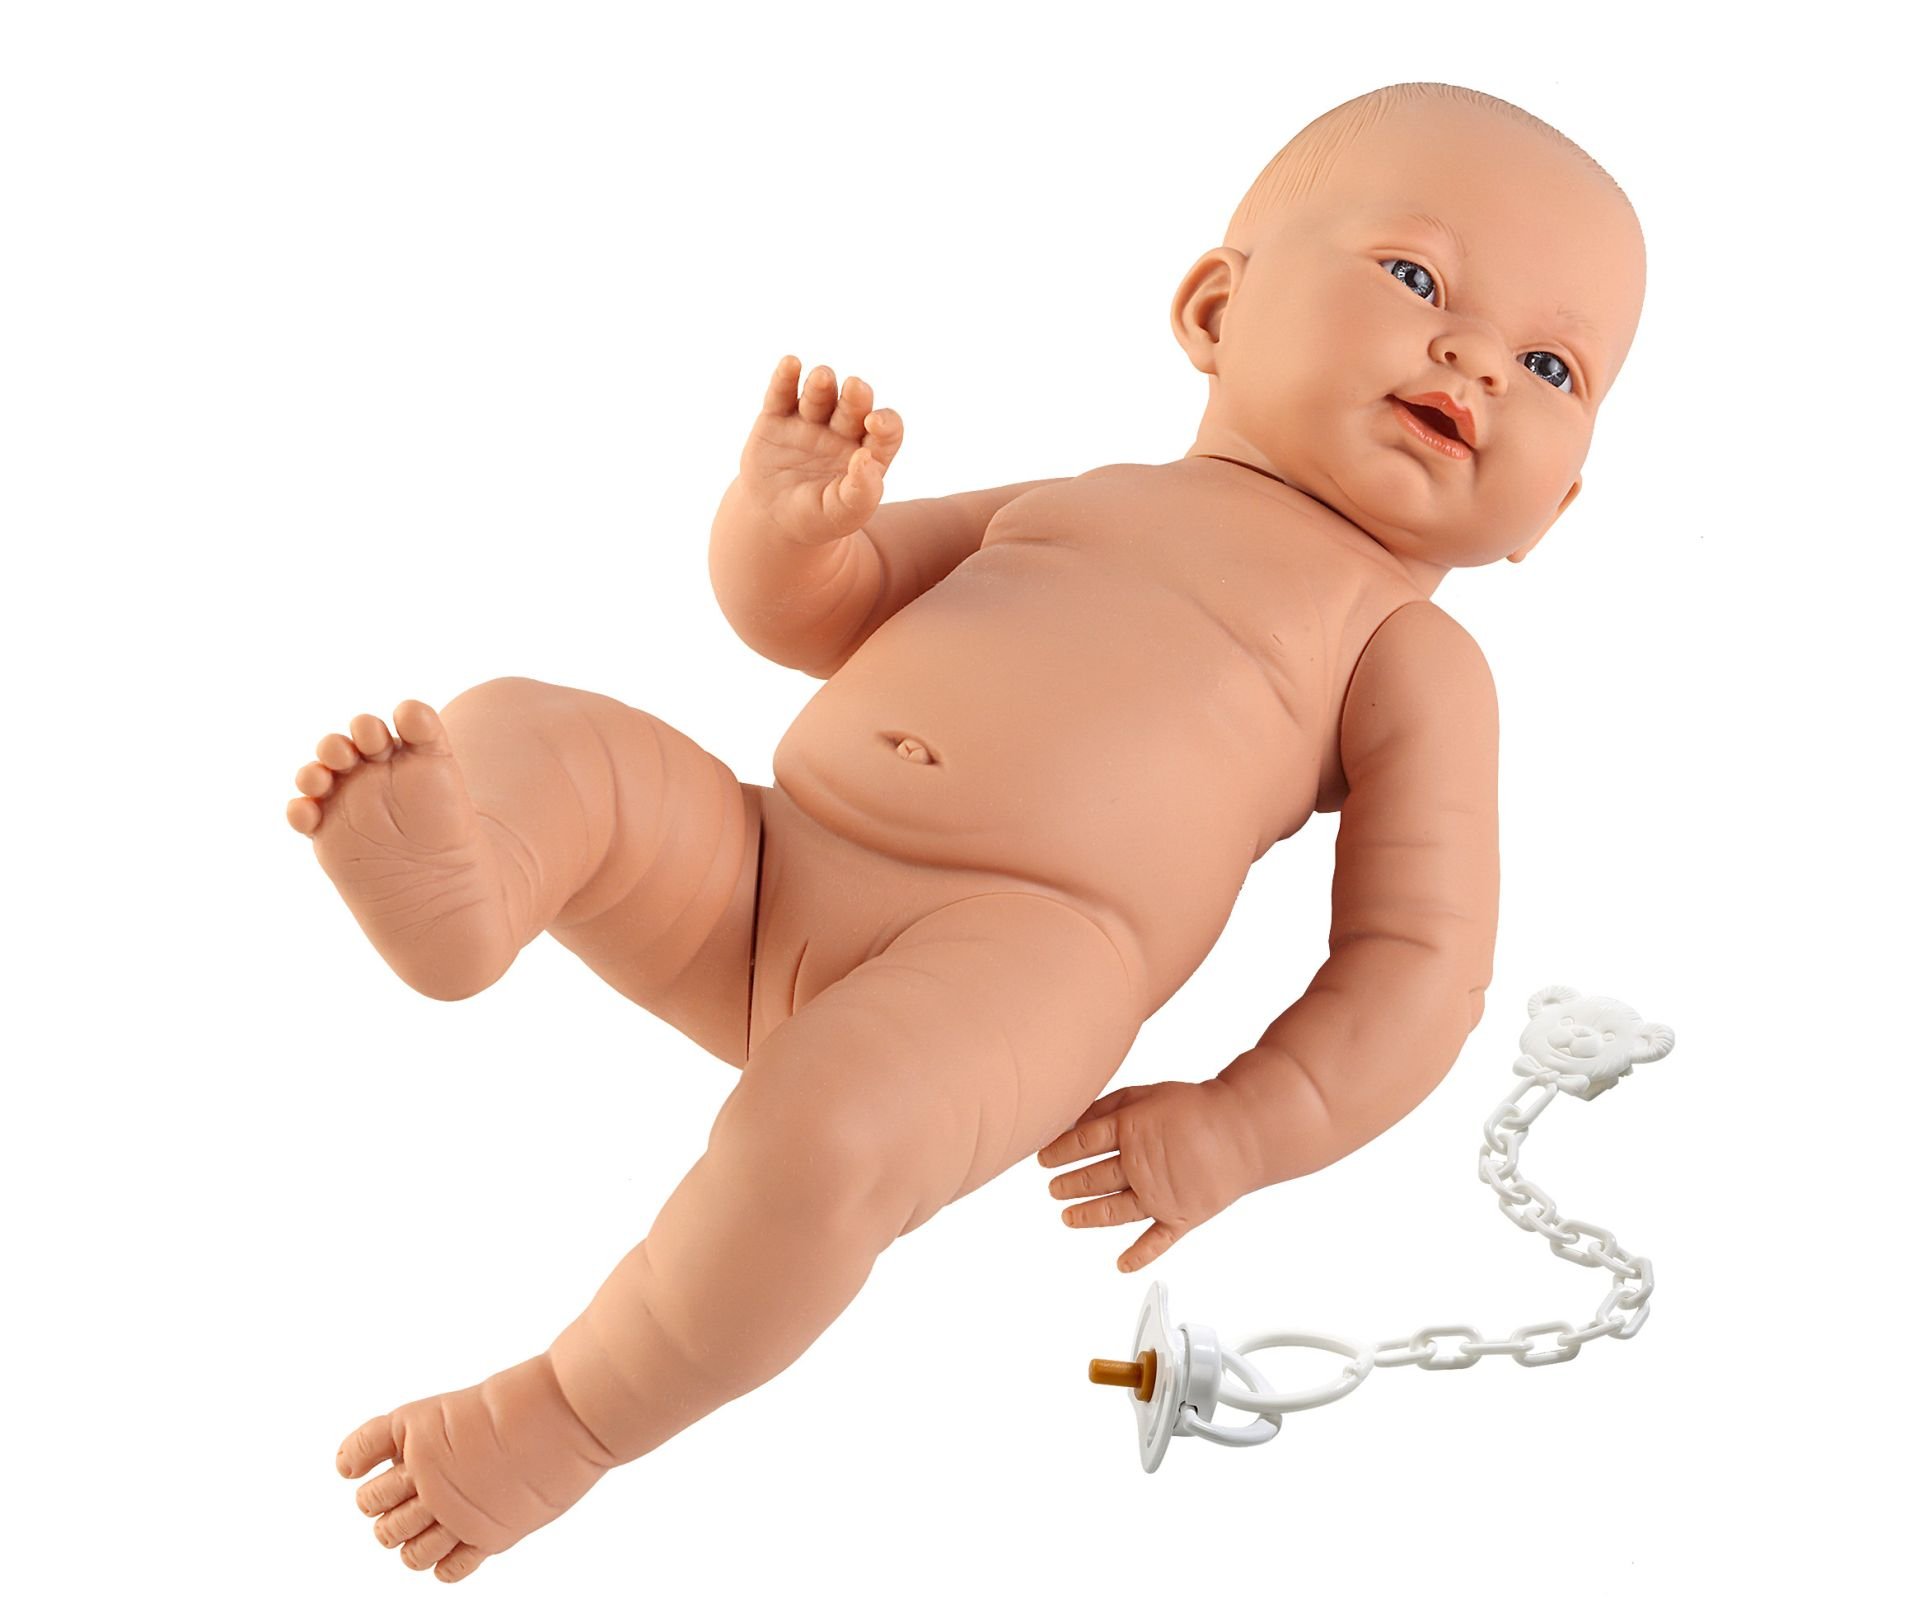 Levně Llorens 45002 NEW BORN HOLČIČKA - realistická panenka miminko bílé rasy s celovinylovým tělem - 45 cm